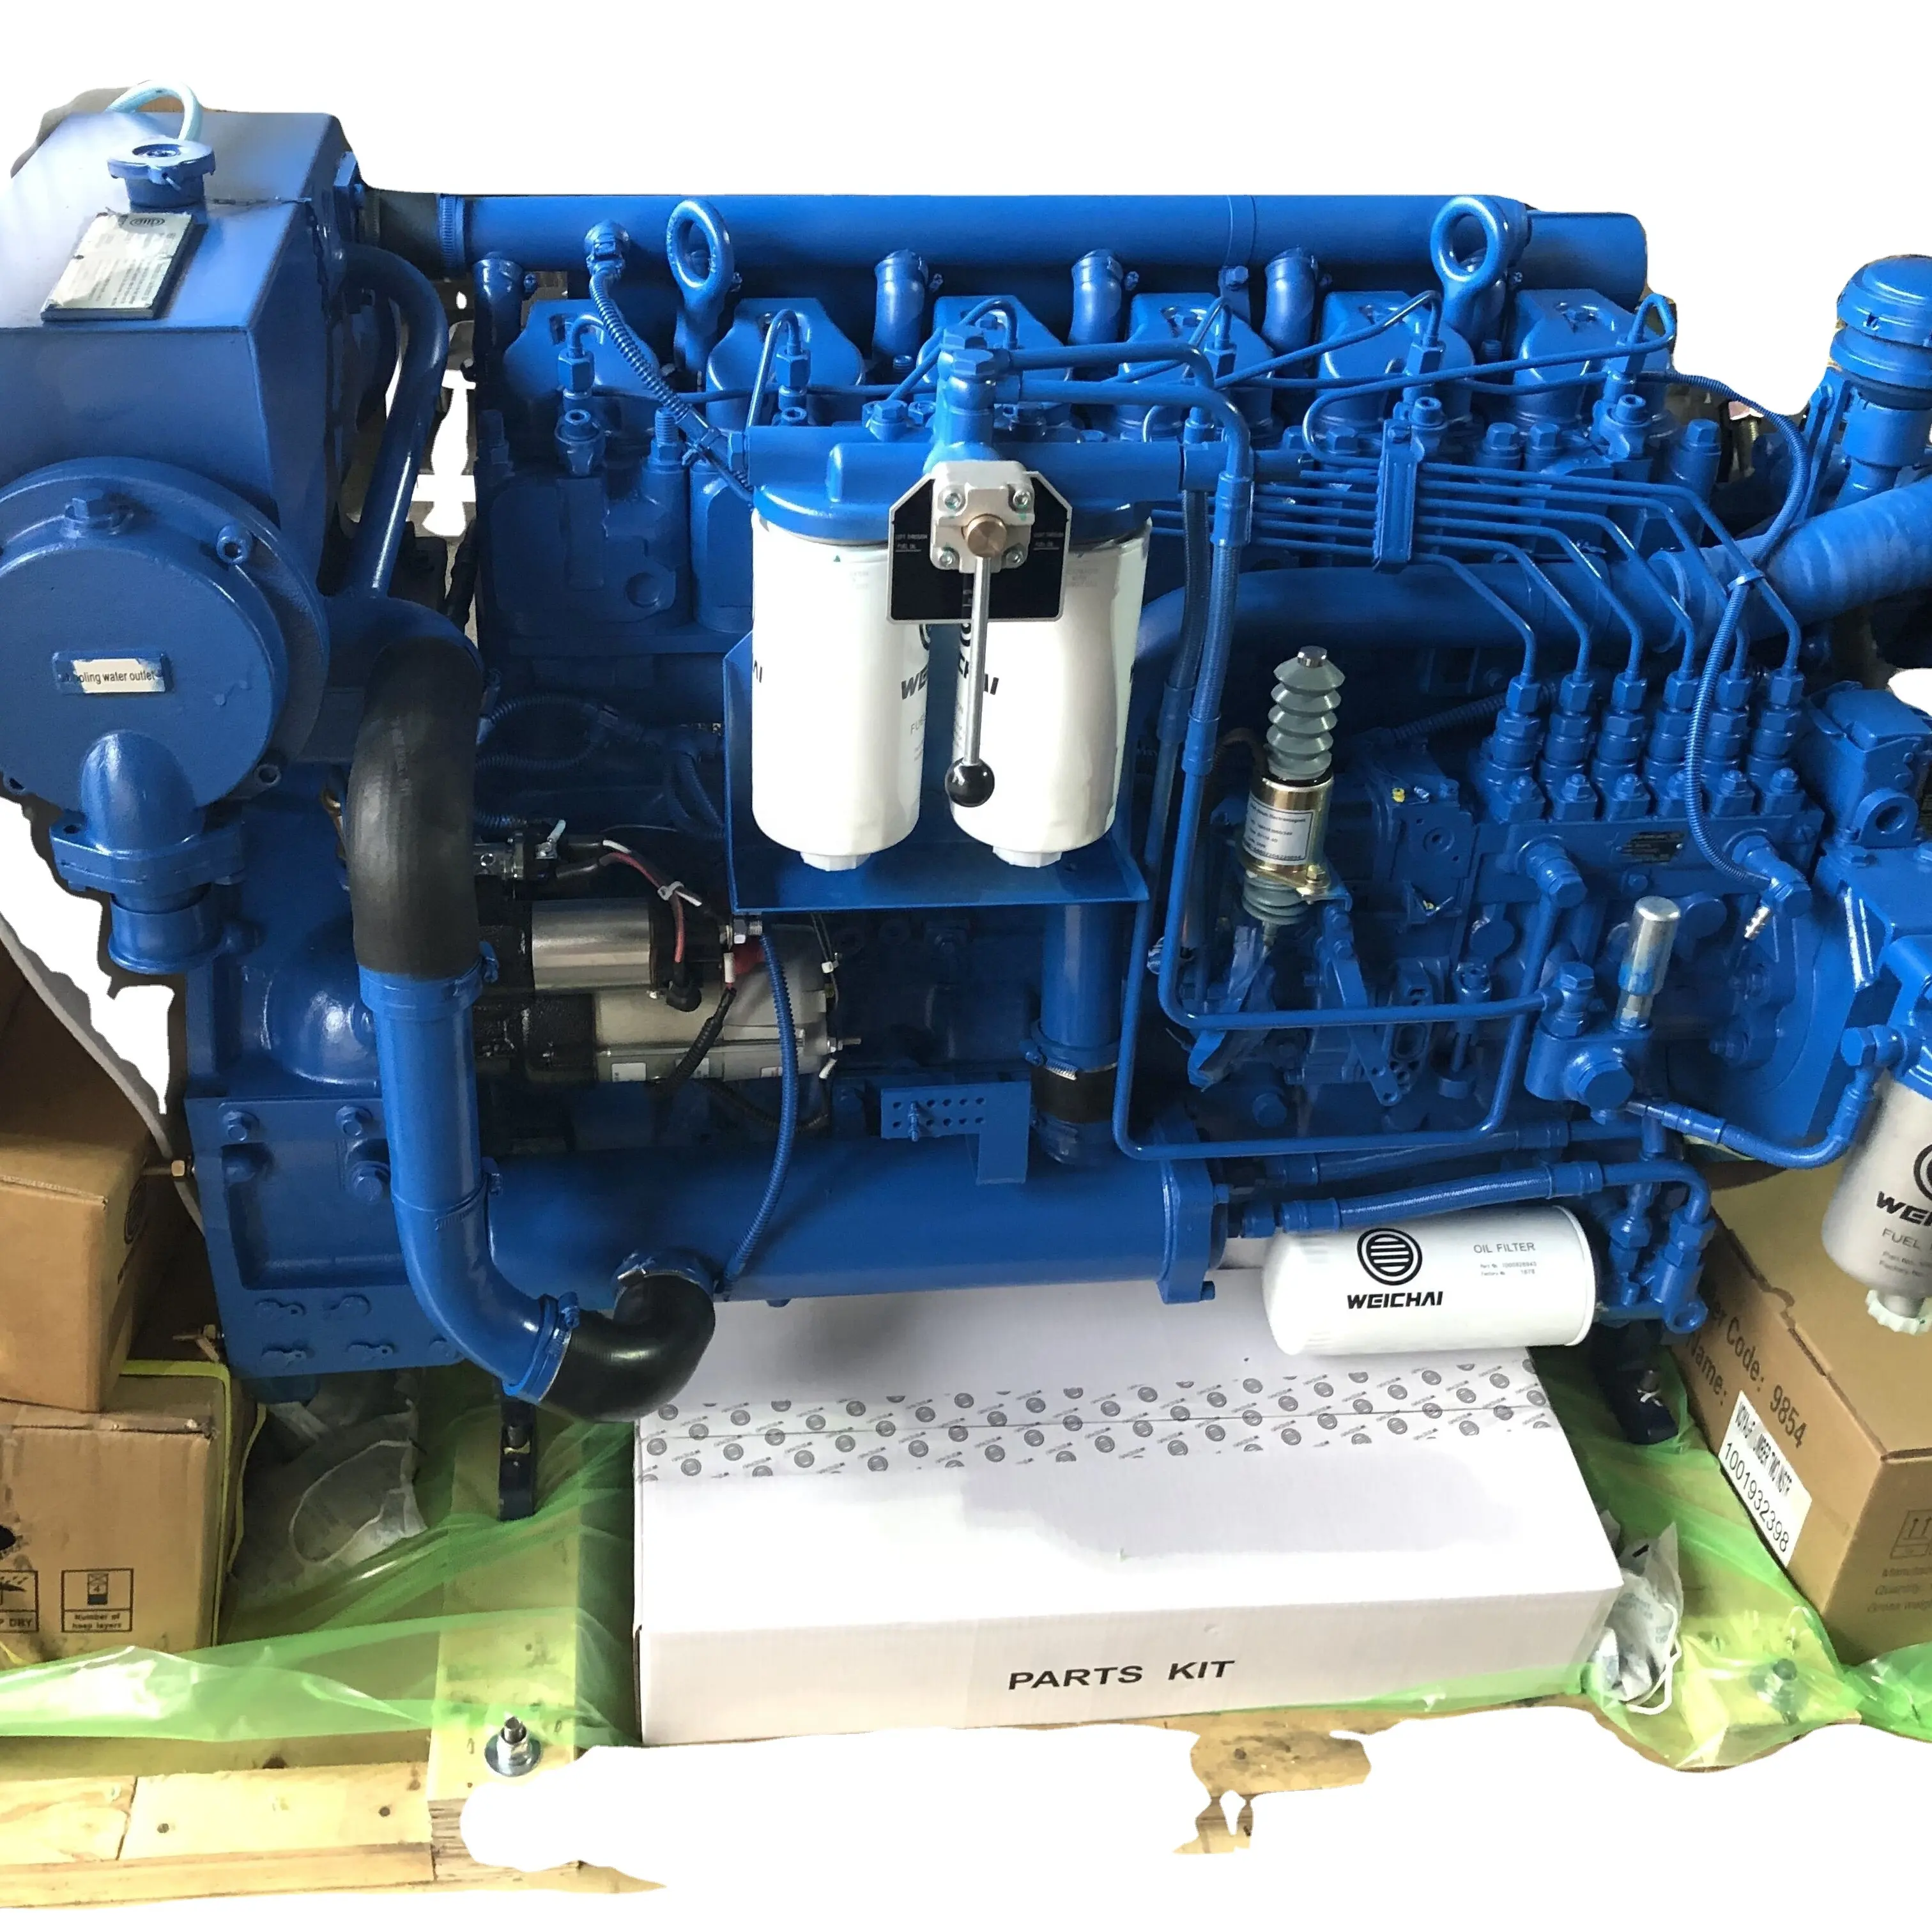 Морской дизельный двигатель бренда WEICHAI, модель WP6 2100 л.с. об/мин для лодки